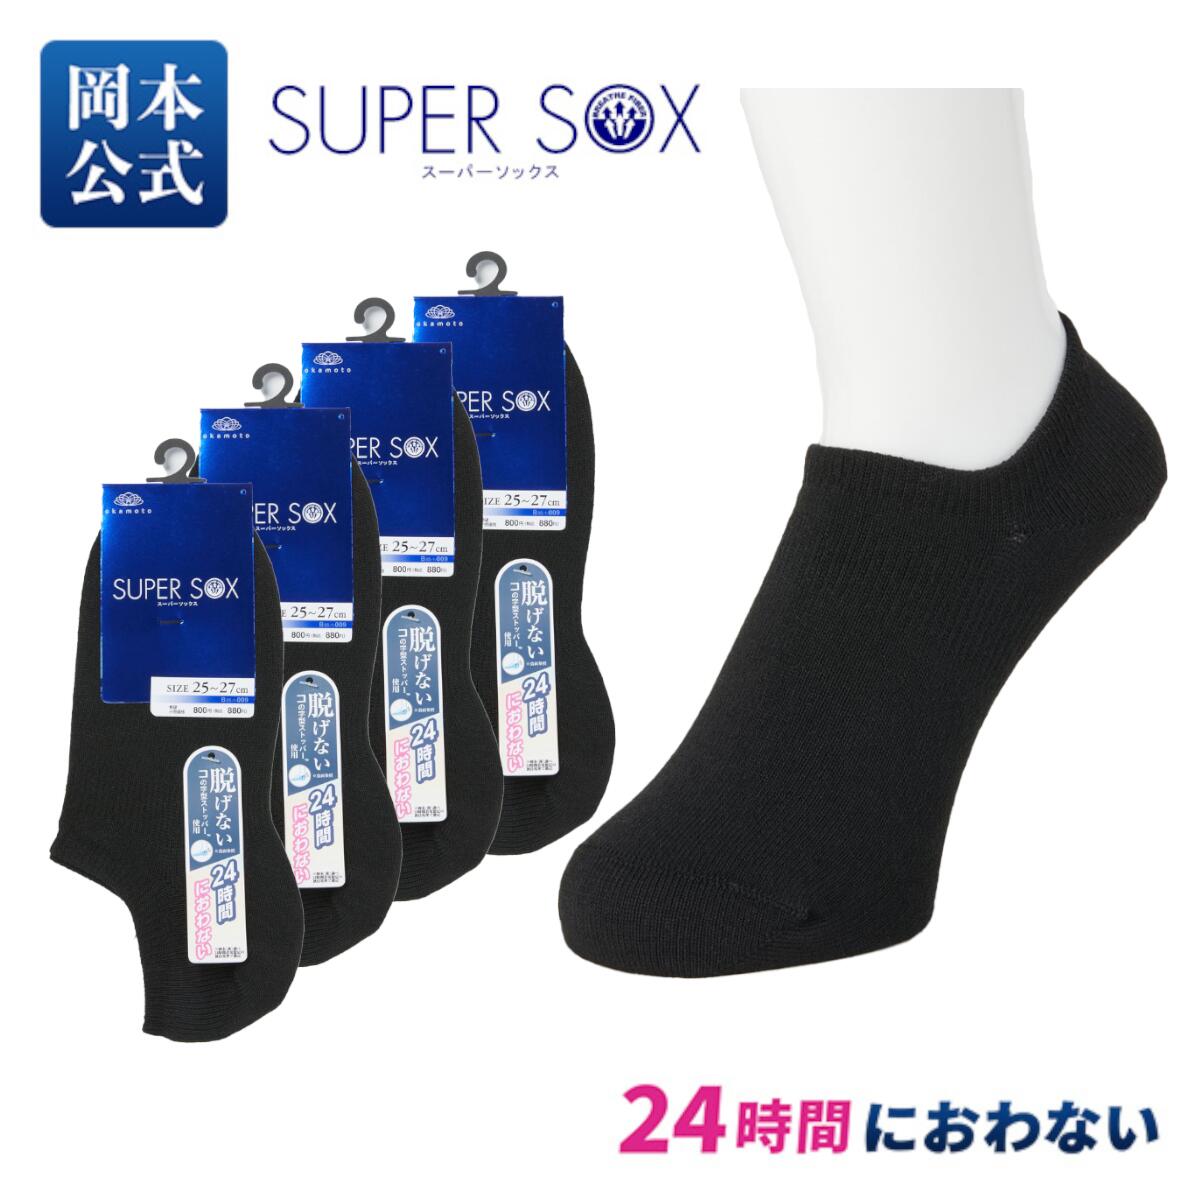 【在庫限り】【靴下の岡本公式】4足組 SUPER SOX メンズ フットカバー 超深履き 無地